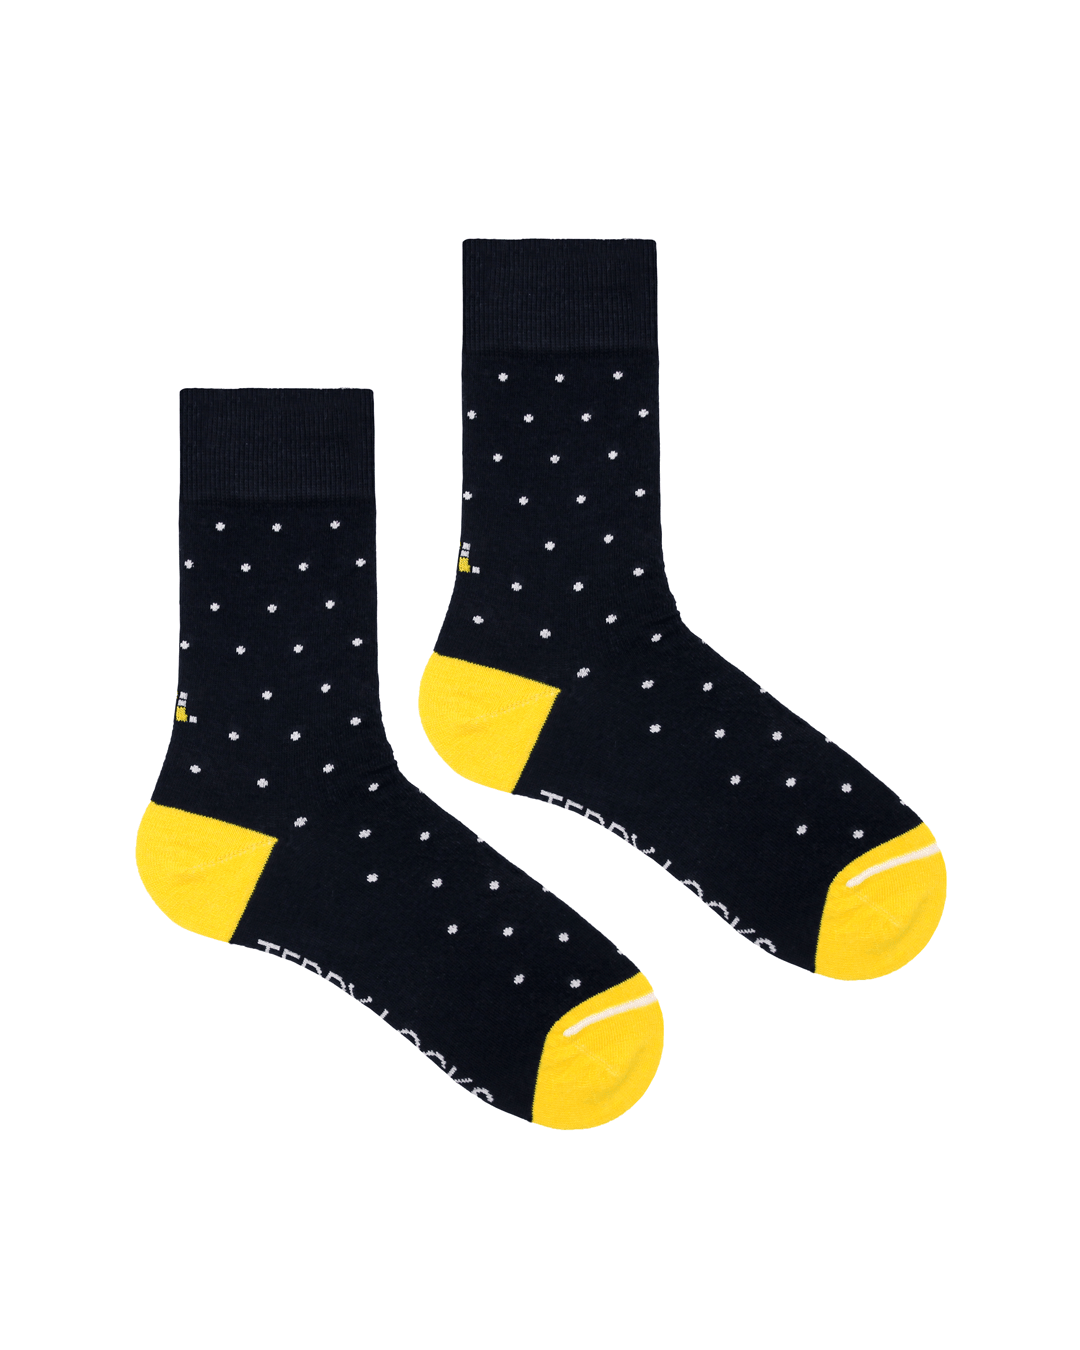 Navy Blue Polka Dot Crew Socks. Yellow Toe Socks. Made from Recycled Plastic Bottles